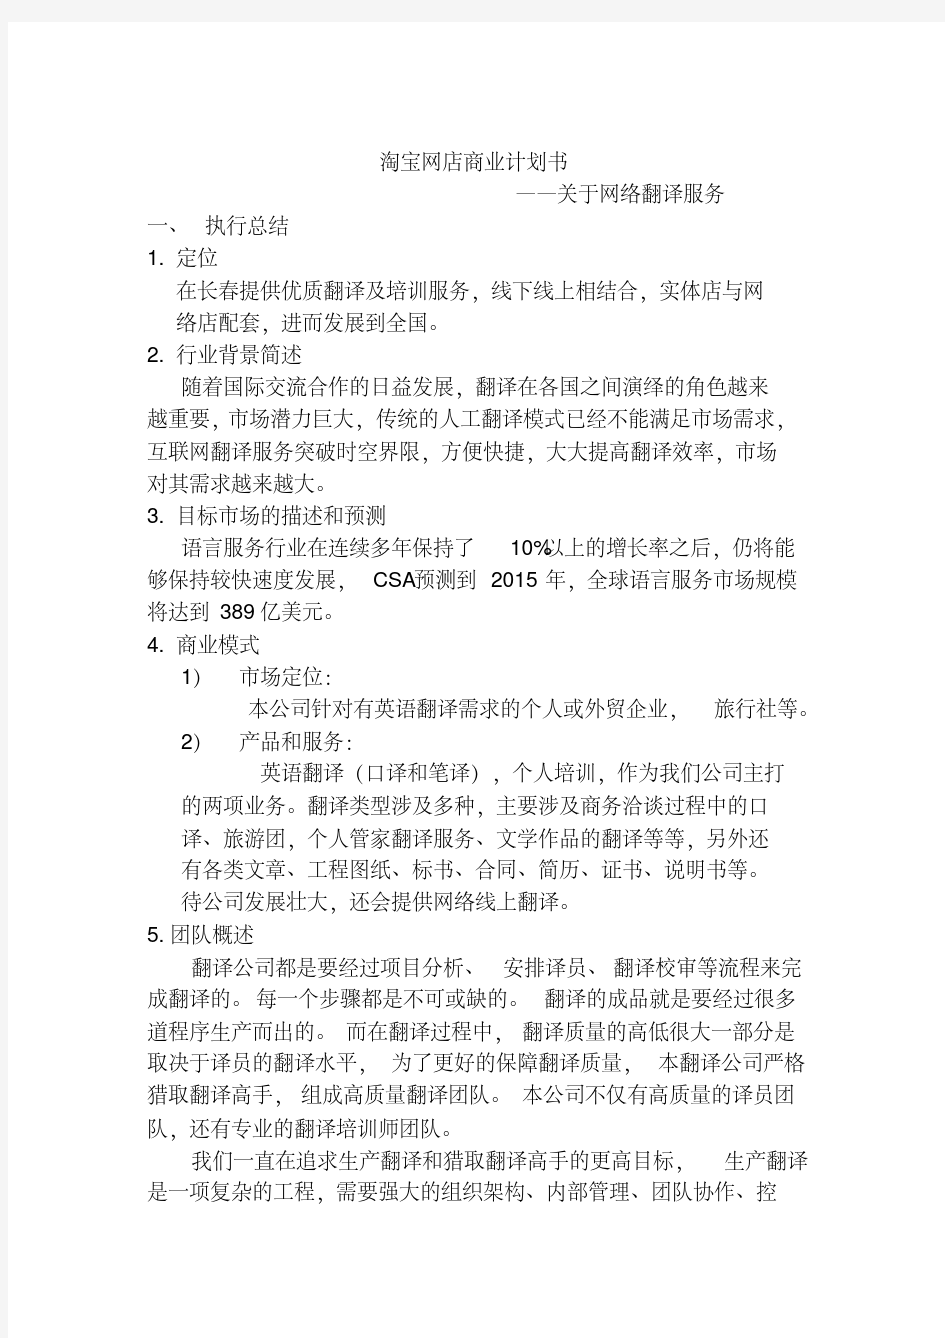 翻译公司商业计划书.pdf